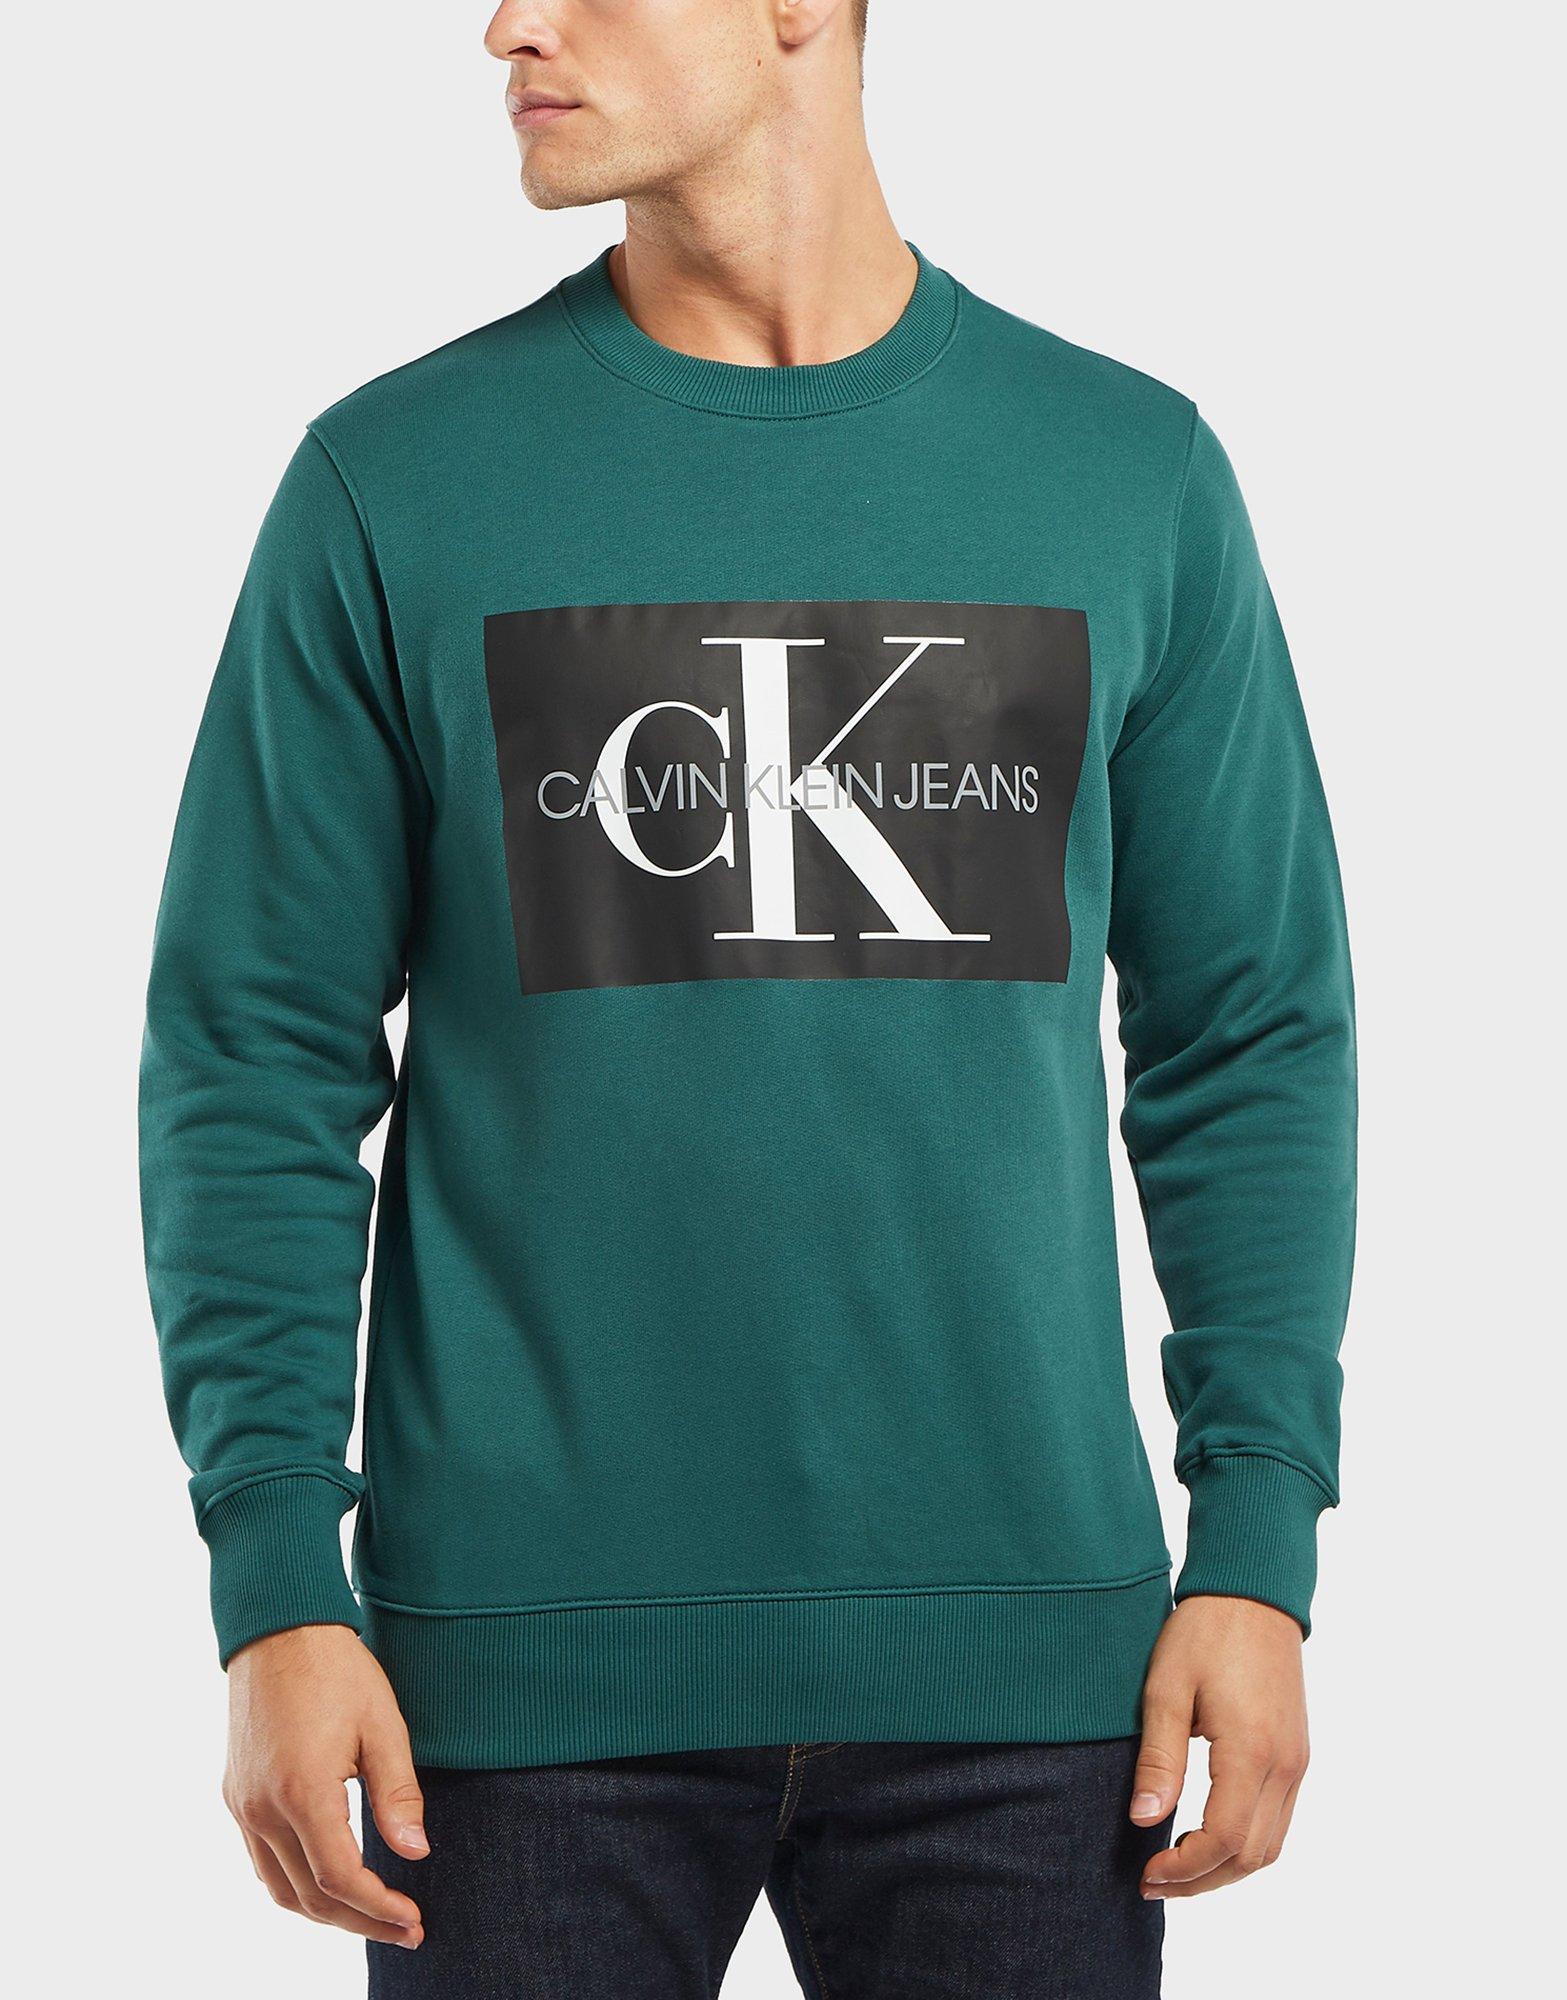 Calvin Klein Box Logo Sweatshirt Online, SAVE 50%.